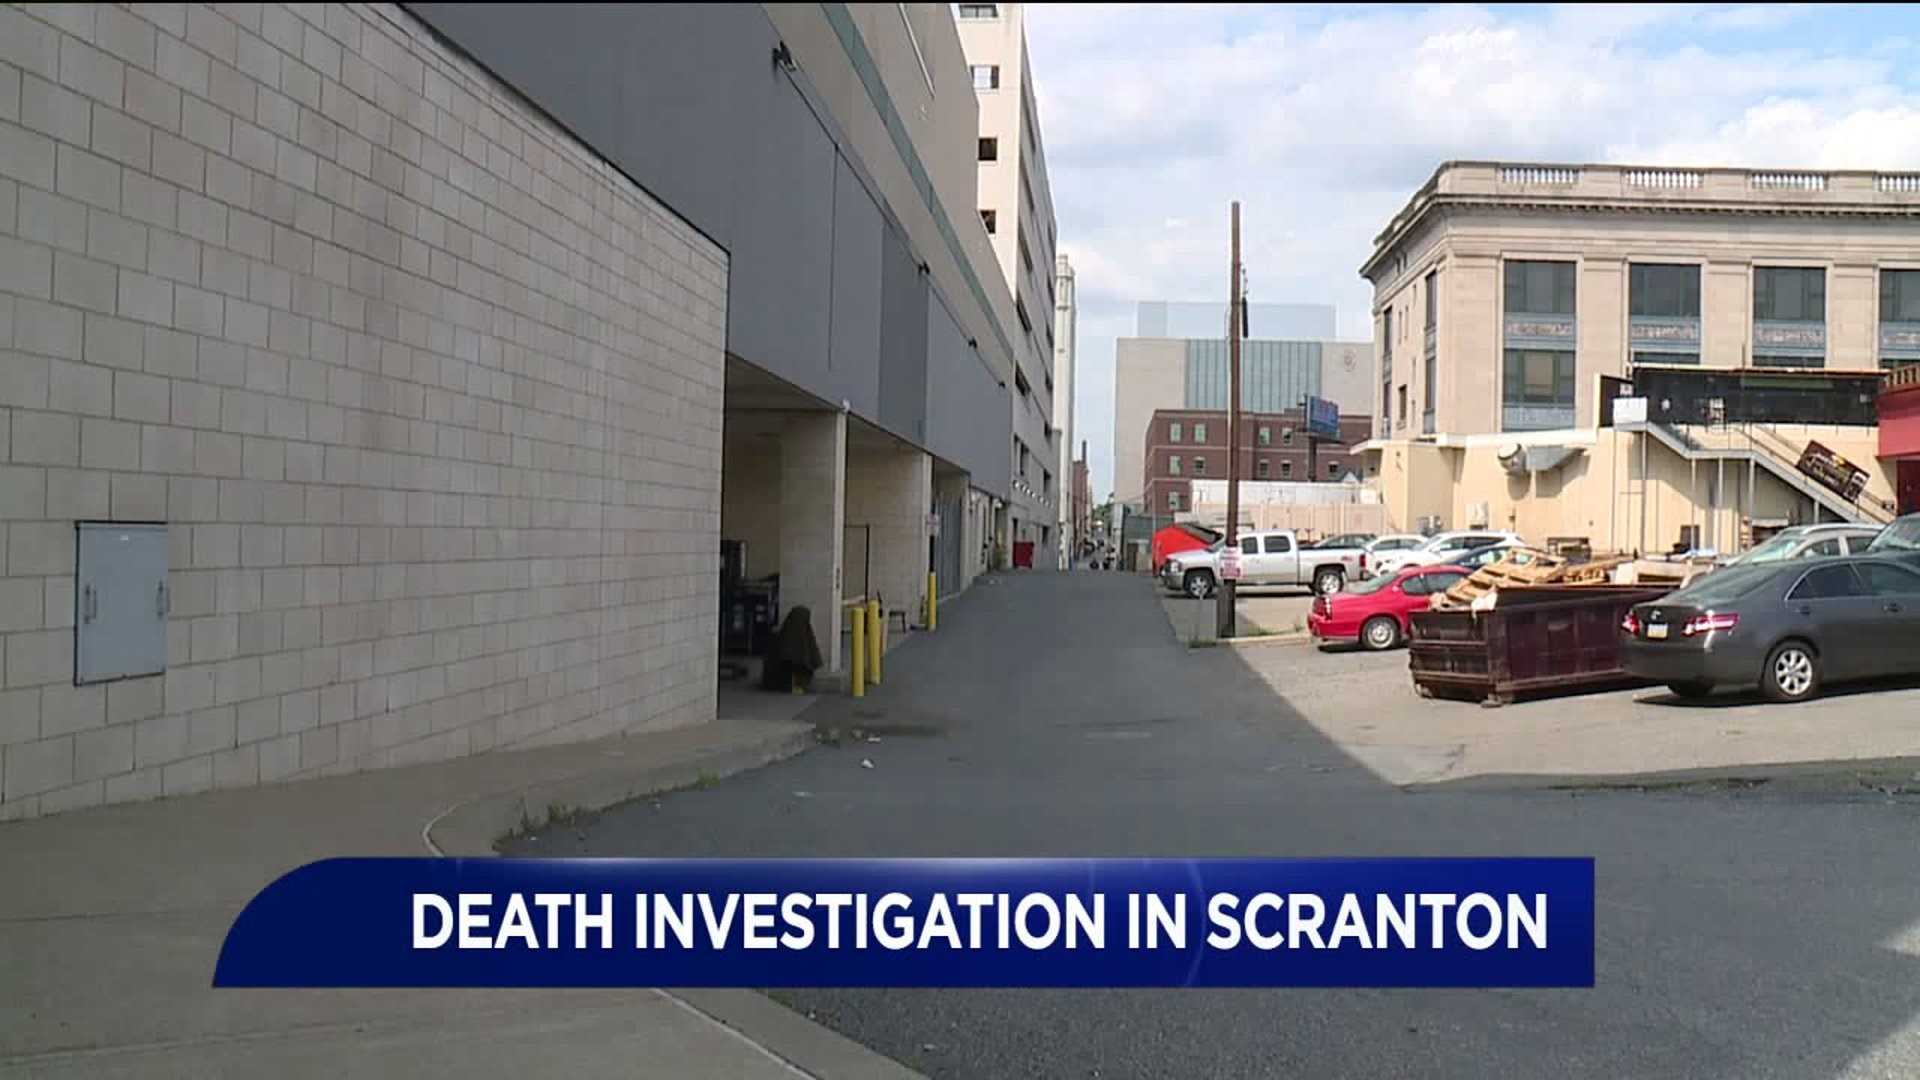 Death Investigation Underway after Fight in Scranton Alley